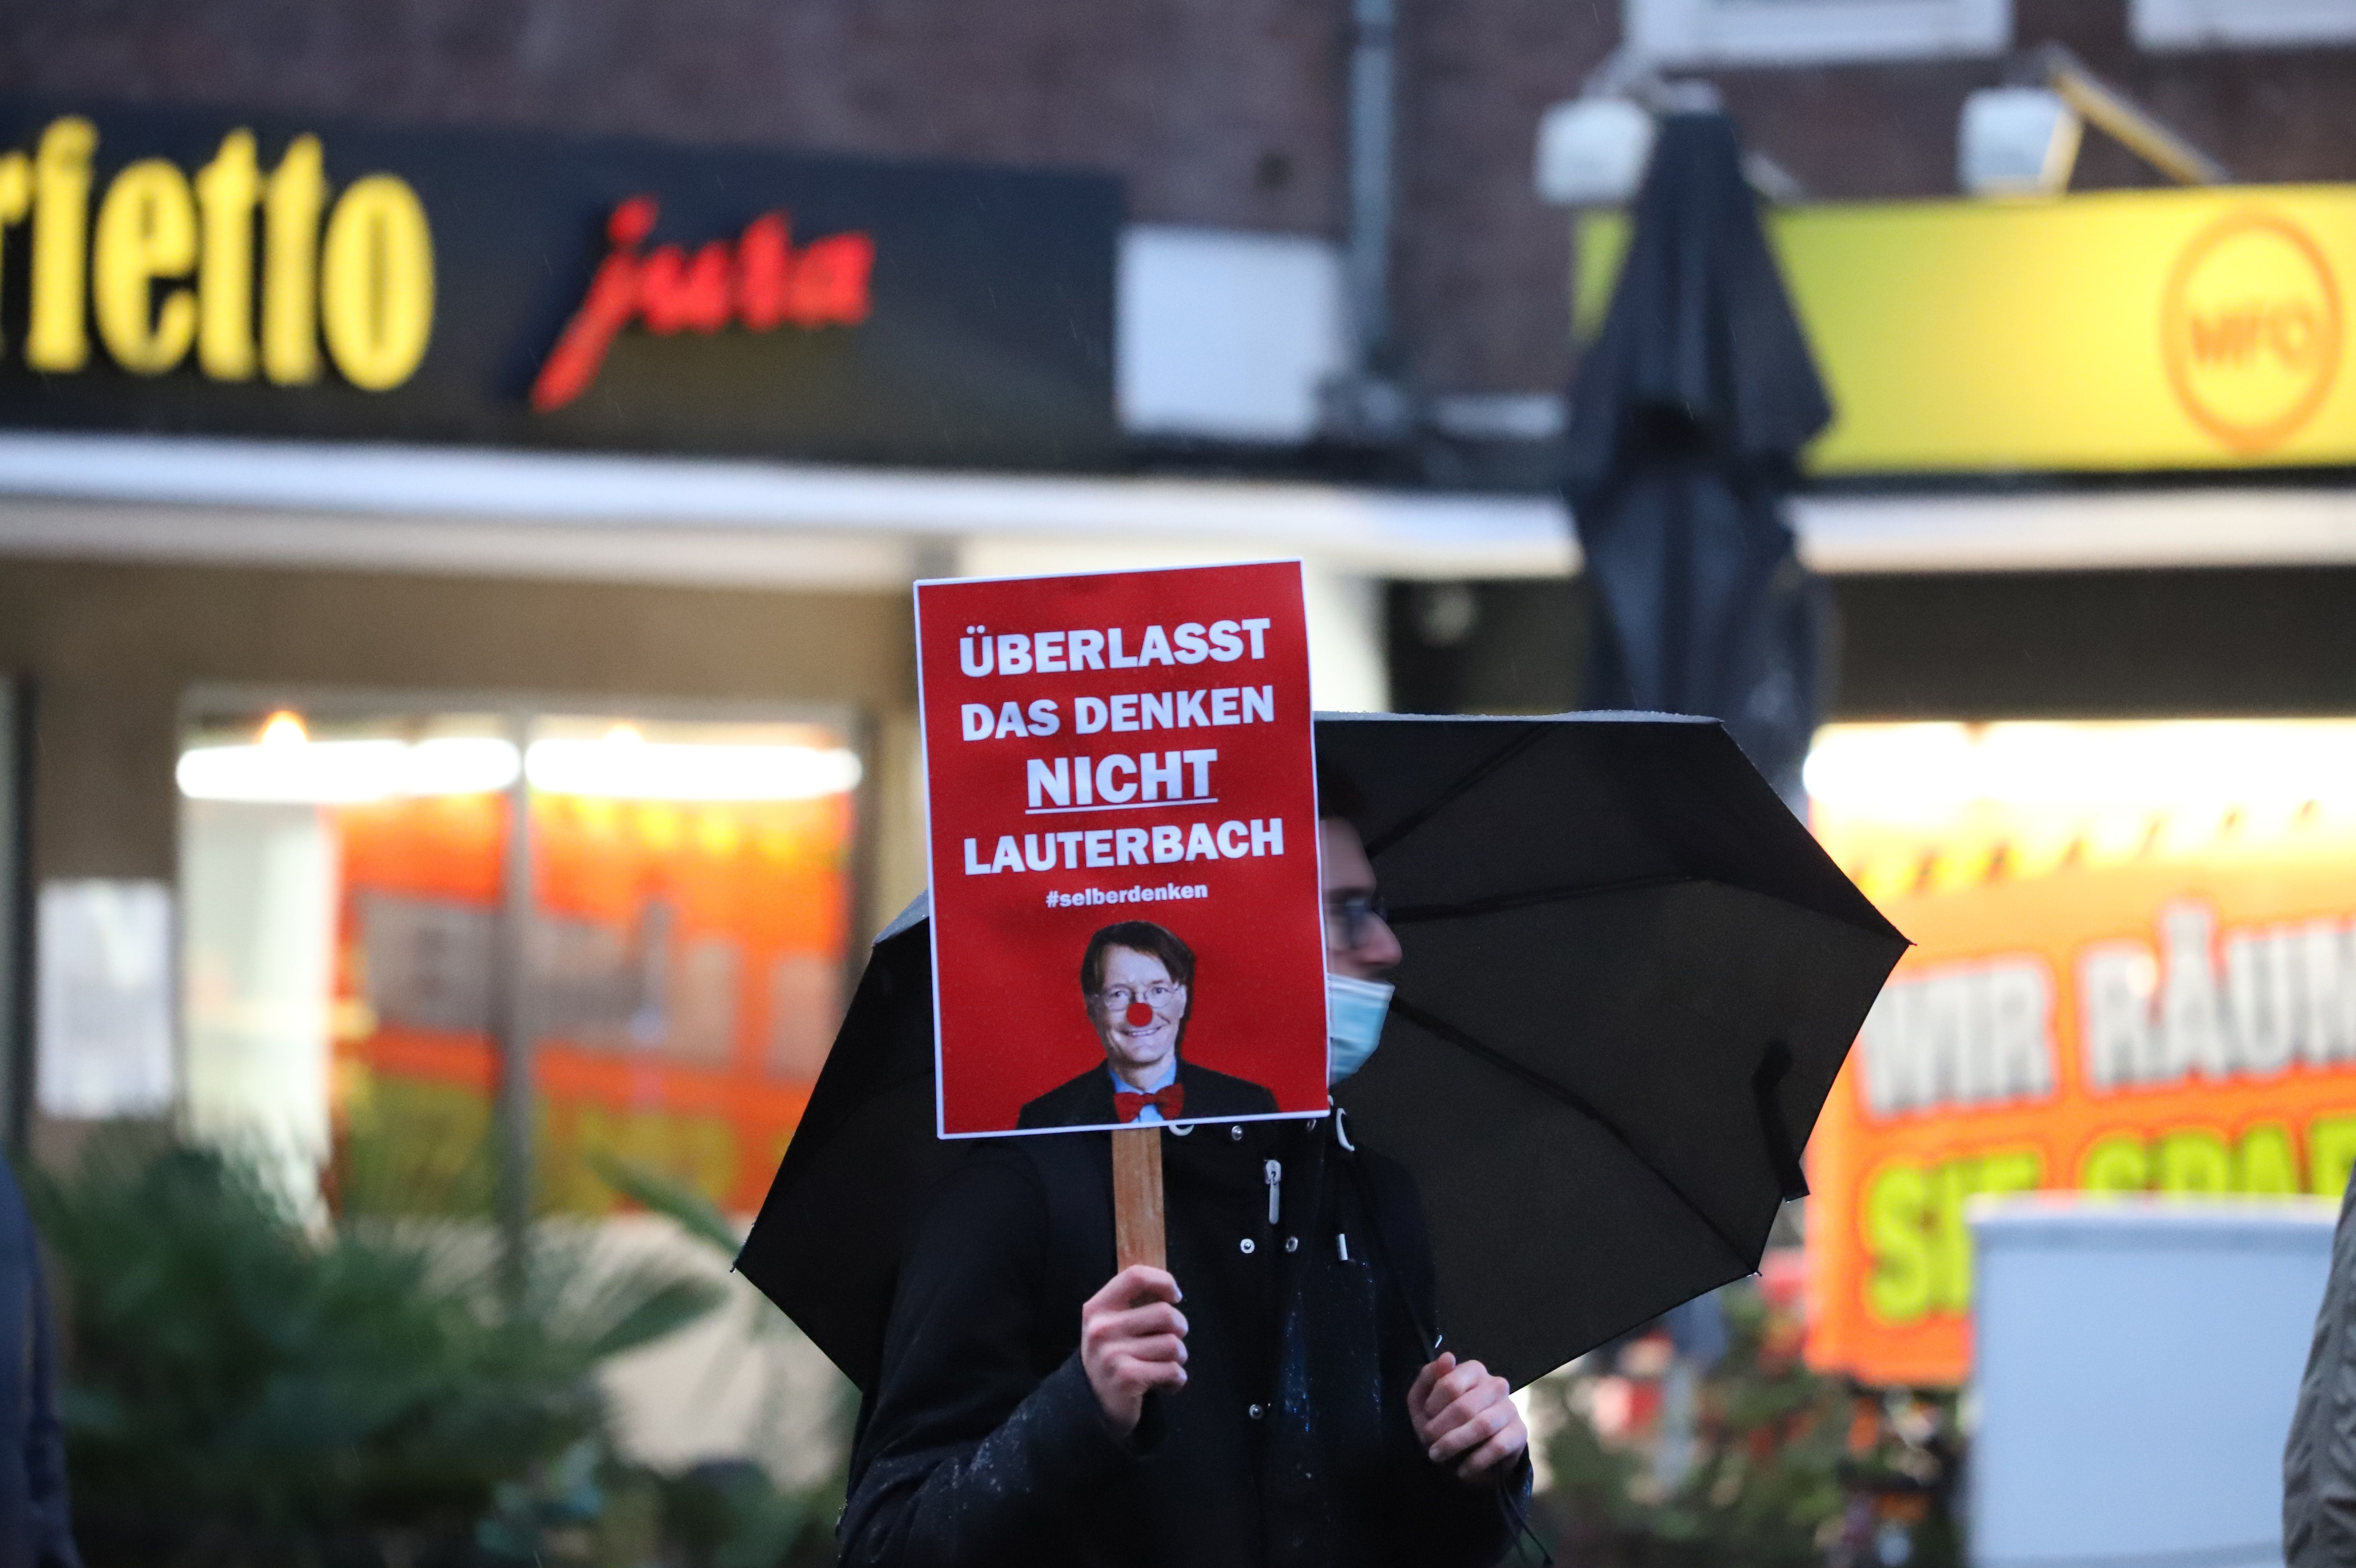 Menschen, die gegen Corona-Beschränkungen in Düsseldorf protestieren- am 08.01.22 / Foto Düsseldorf © unsplash.com/photojournalism